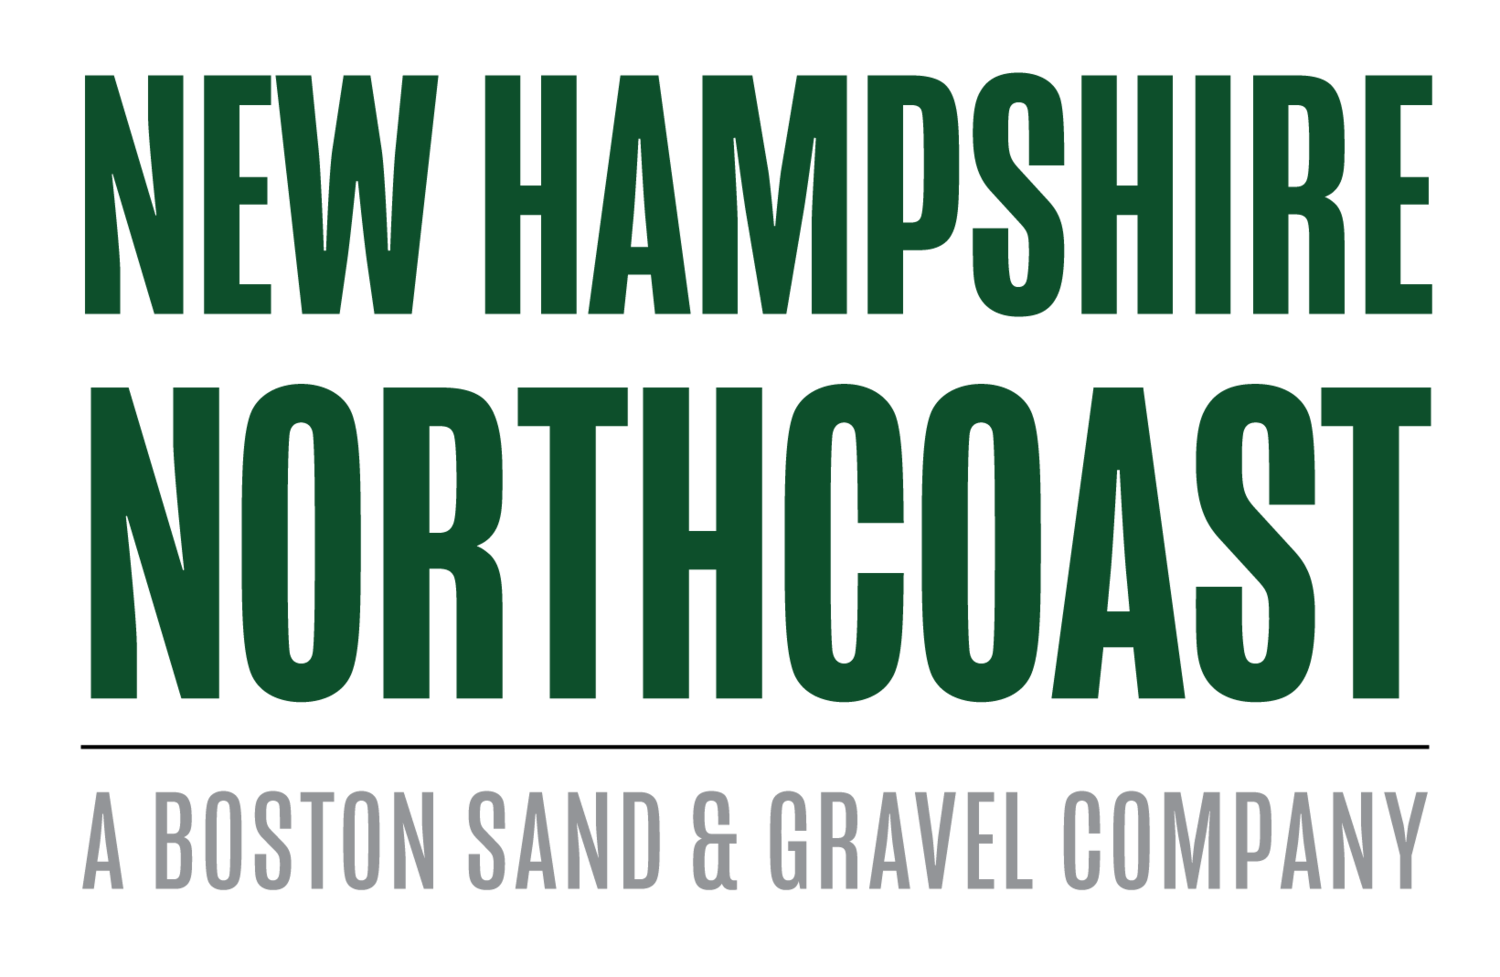 New Hampshire Northcoast